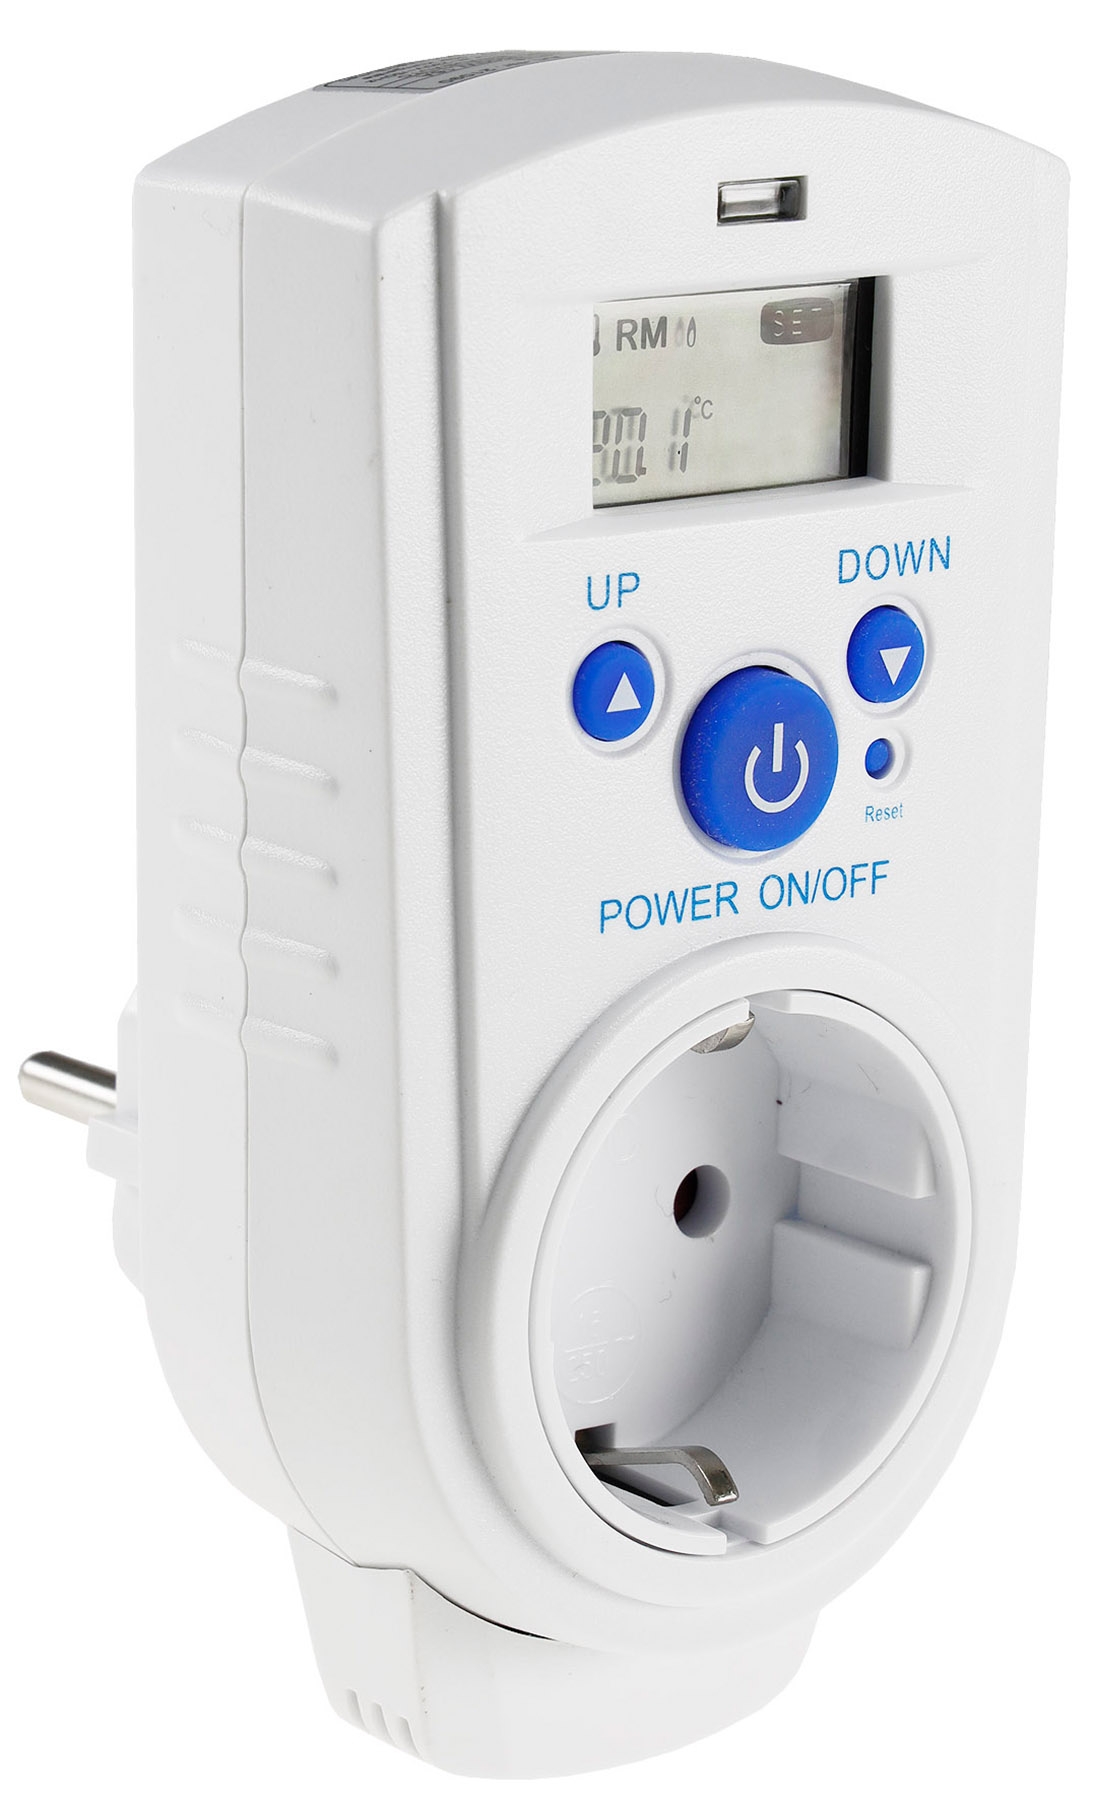 Steckdosen-Thermostat ST-35 digi max. 3500W, 5-30°C, EIN/AUS